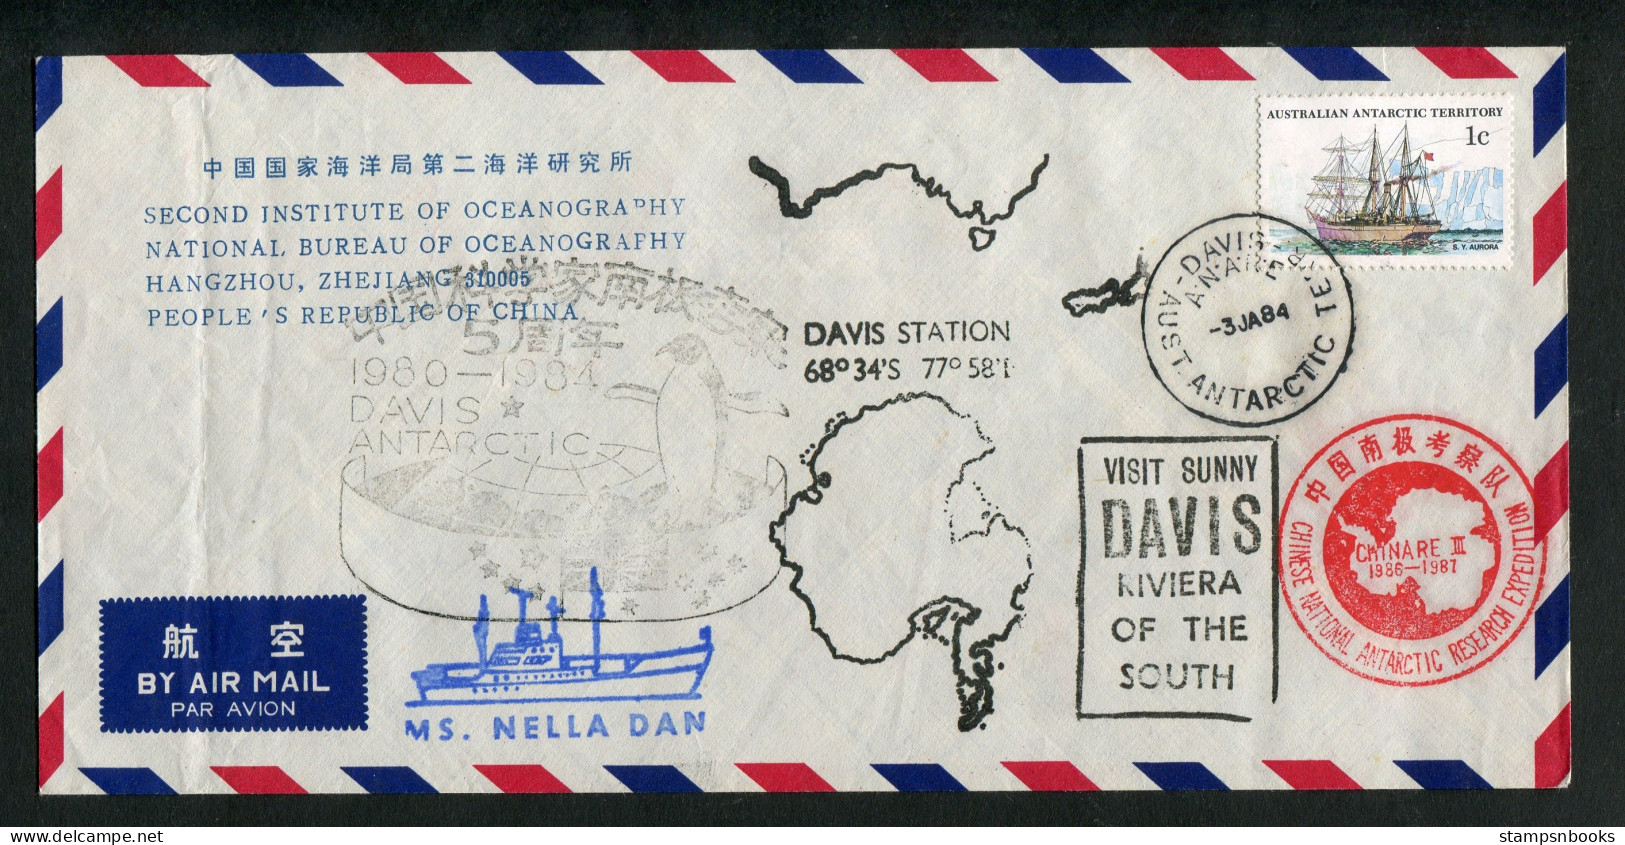 1984 A.A.T. China M.S. NELLA DAN Ship DAVIS Antarctica CHINARE Expedition Penguin Cover - Lettres & Documents